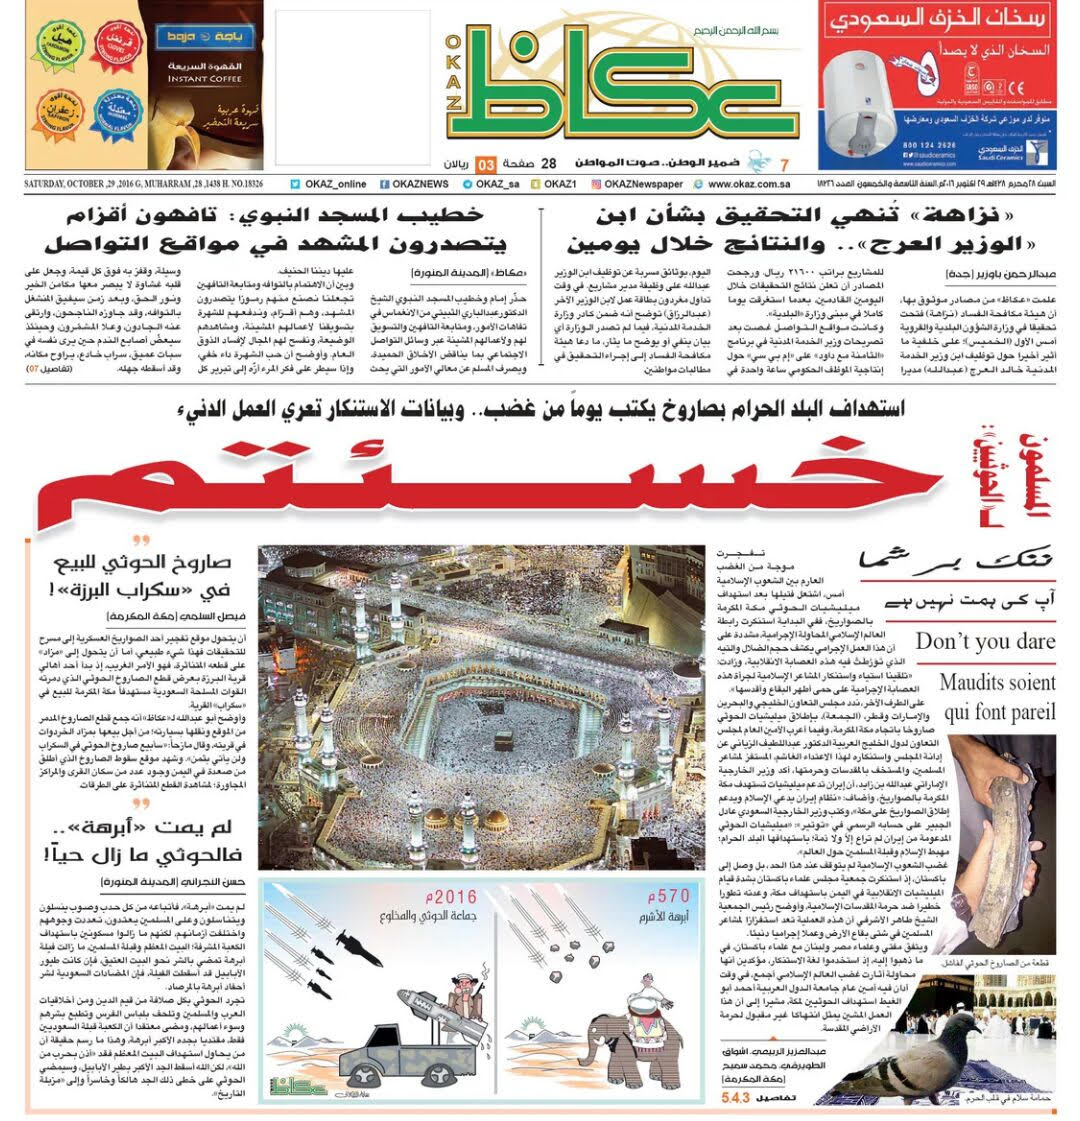 غلاف #عكاظ يرمي الحوثيين بالخيبة والذل والخسارة